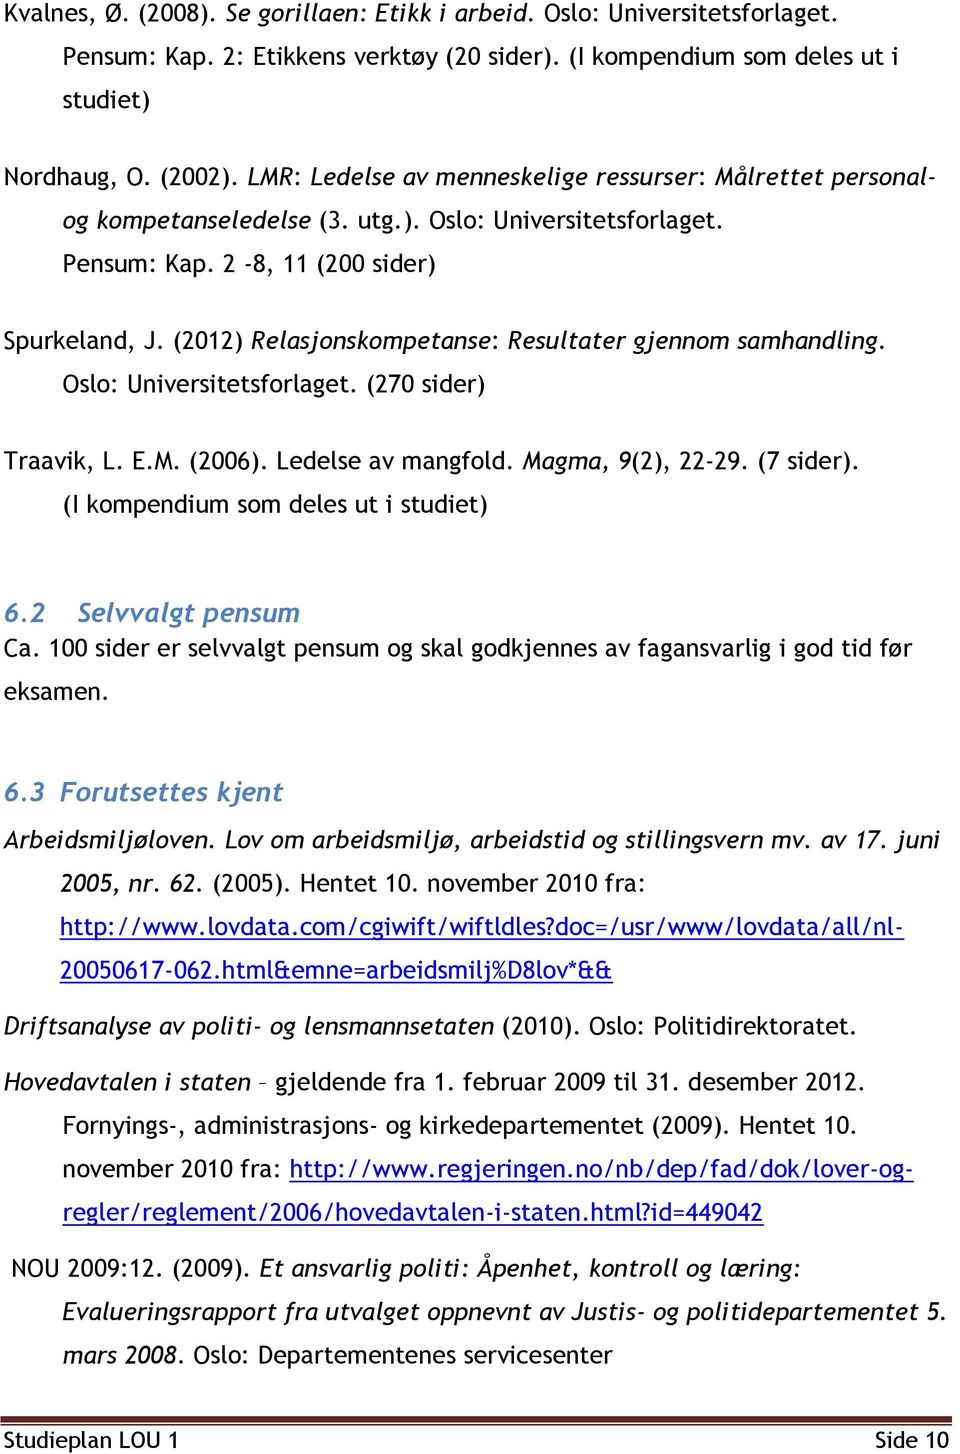 (2012) Relasjonskompetanse: Resultater gjennom samhandling. Oslo: Universitetsforlaget. (270 sider) Traavik, L. E.M. (2006). Ledelse av mangfold. Magma, 9(2), 22-29. (7 sider).